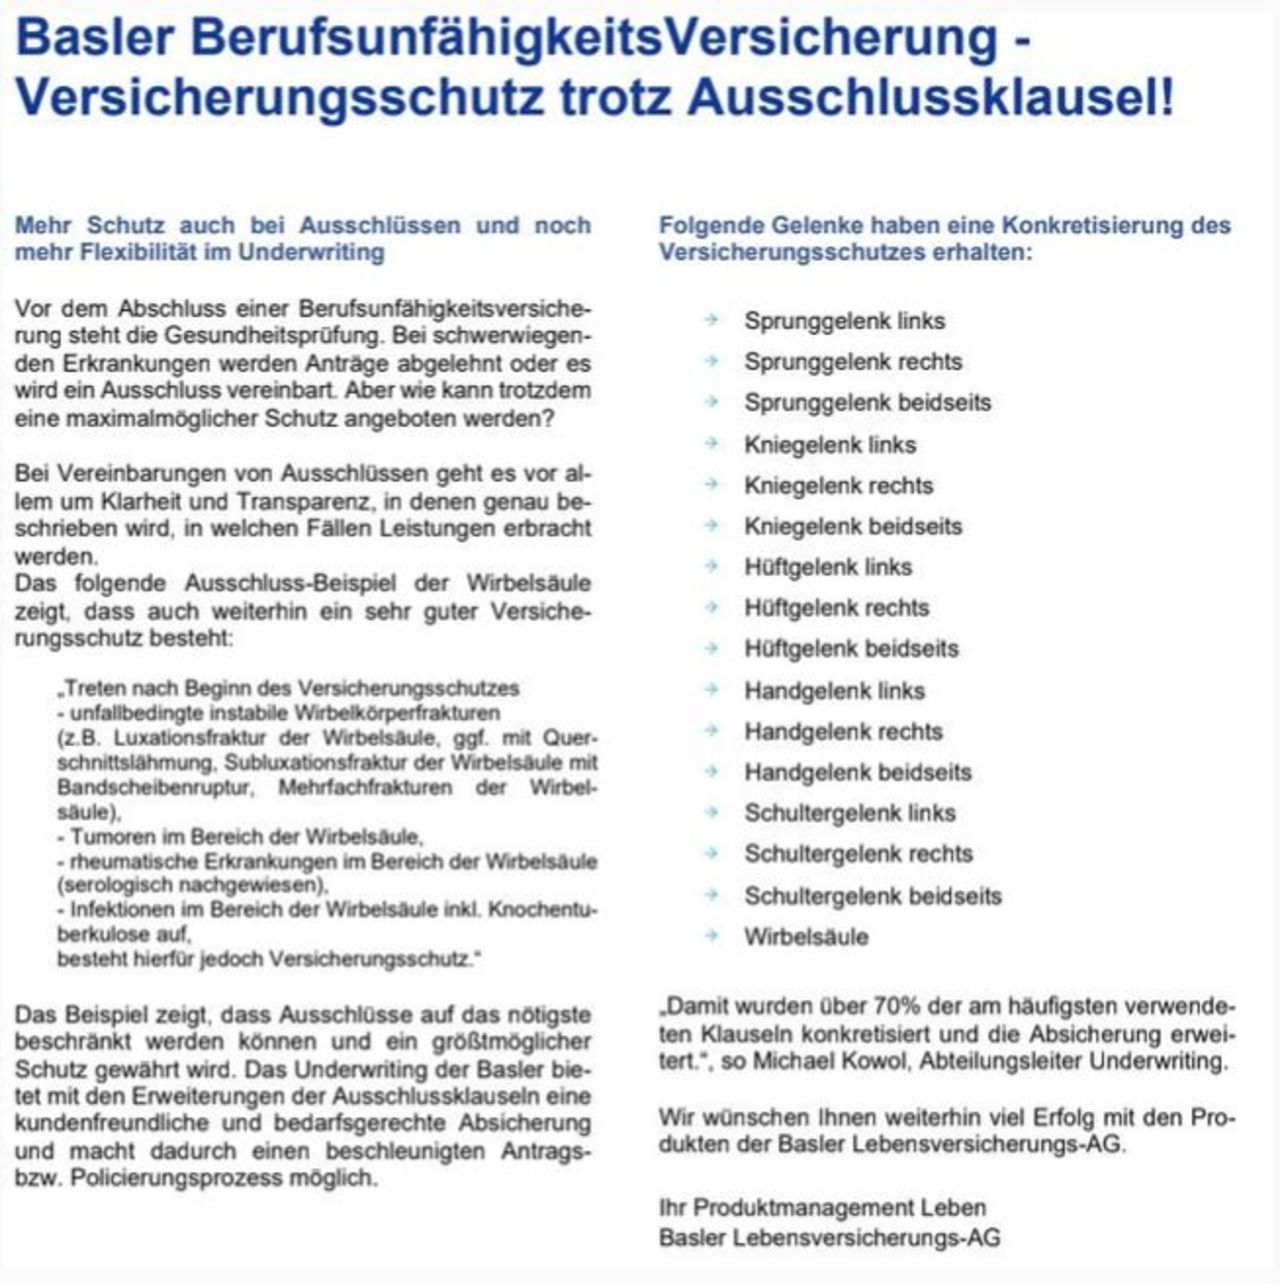 Verbesserung Ausschlussklauseln Basler Berufsunfähigkeitsversicherung